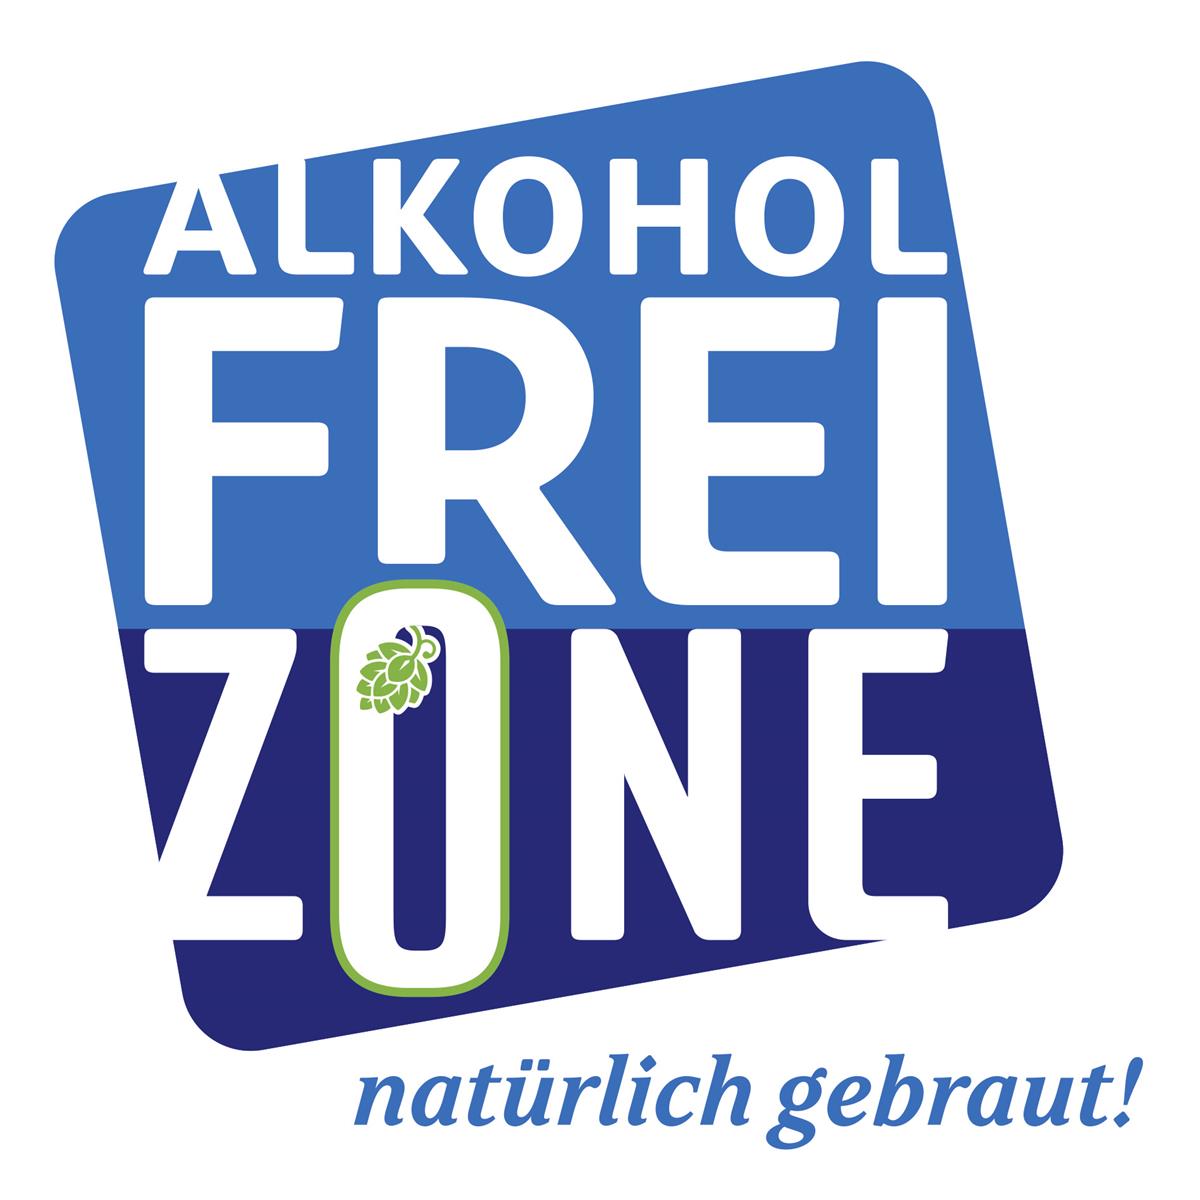 Mit einem einheitlichen Erscheinungsbild präsentiert die Brau Union Österreich ihre markenübergreifende Initiative „AlkoholFREIZONE“ am Markt.